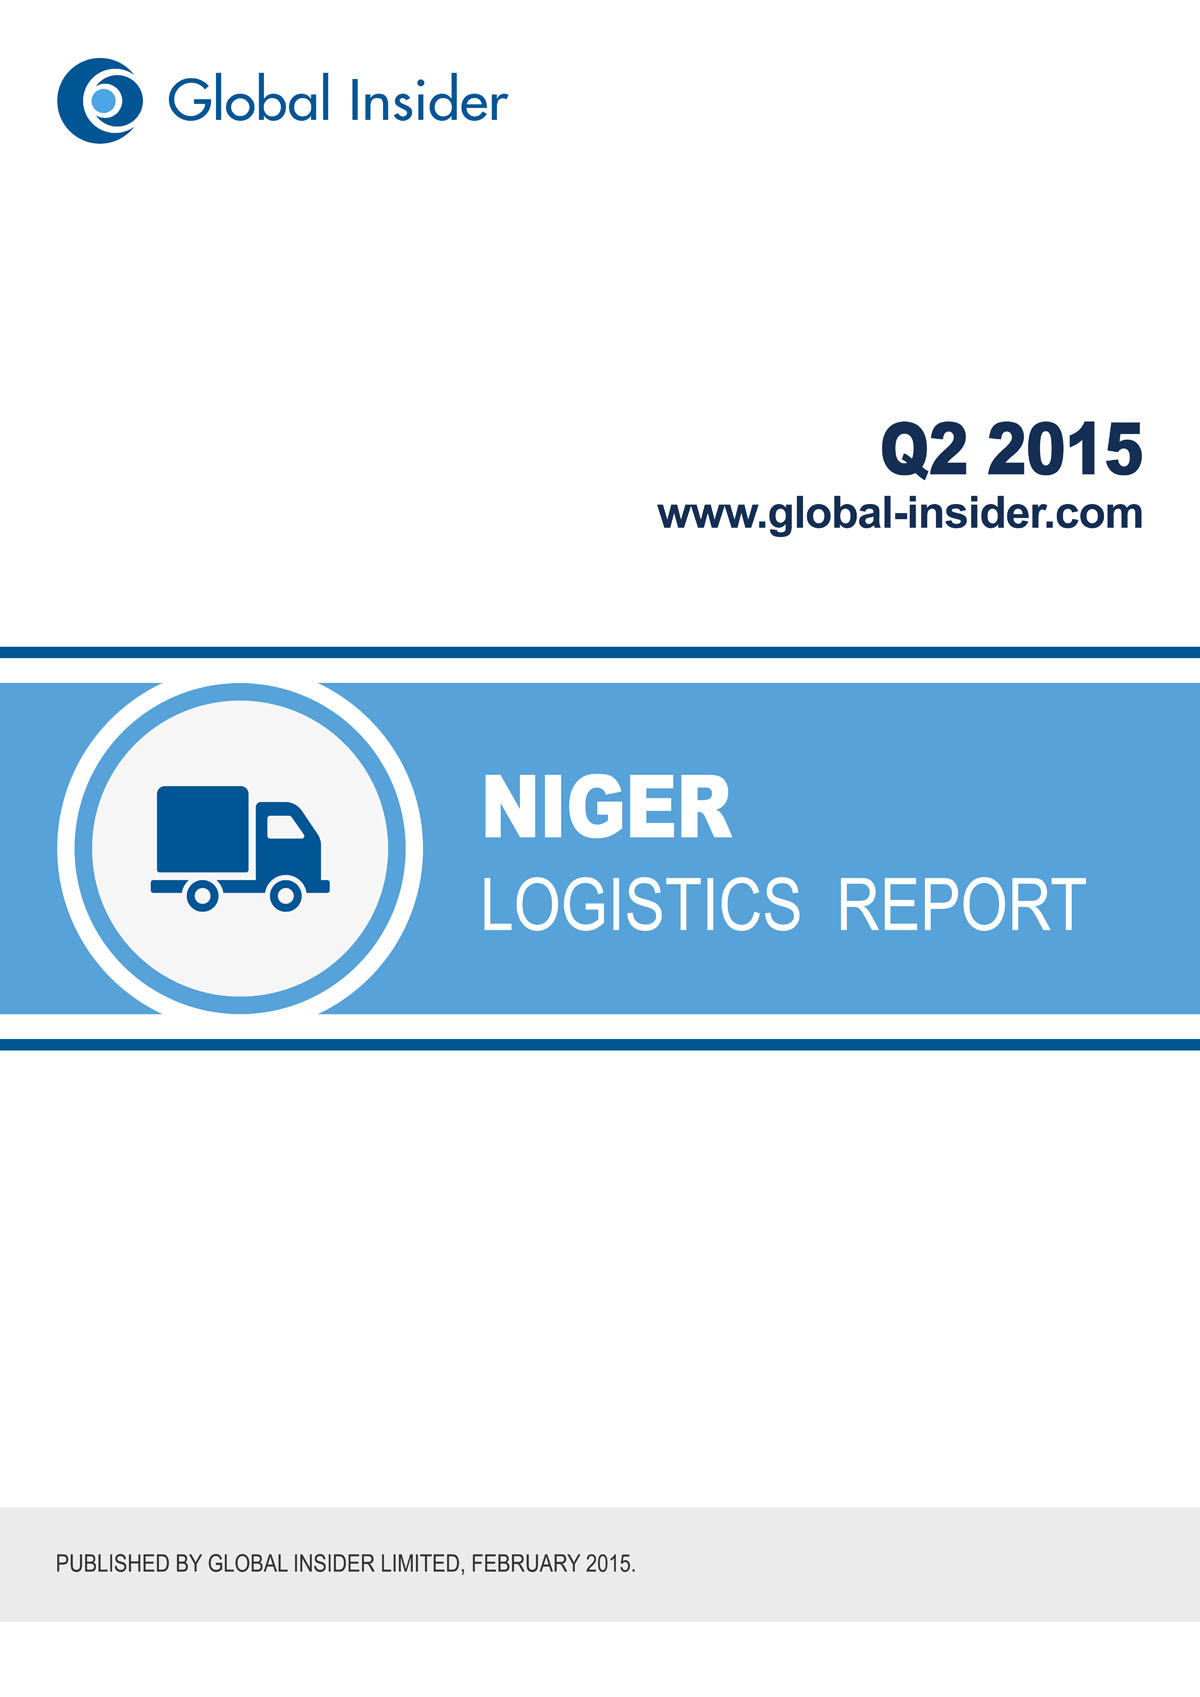 Niger Logistics Report